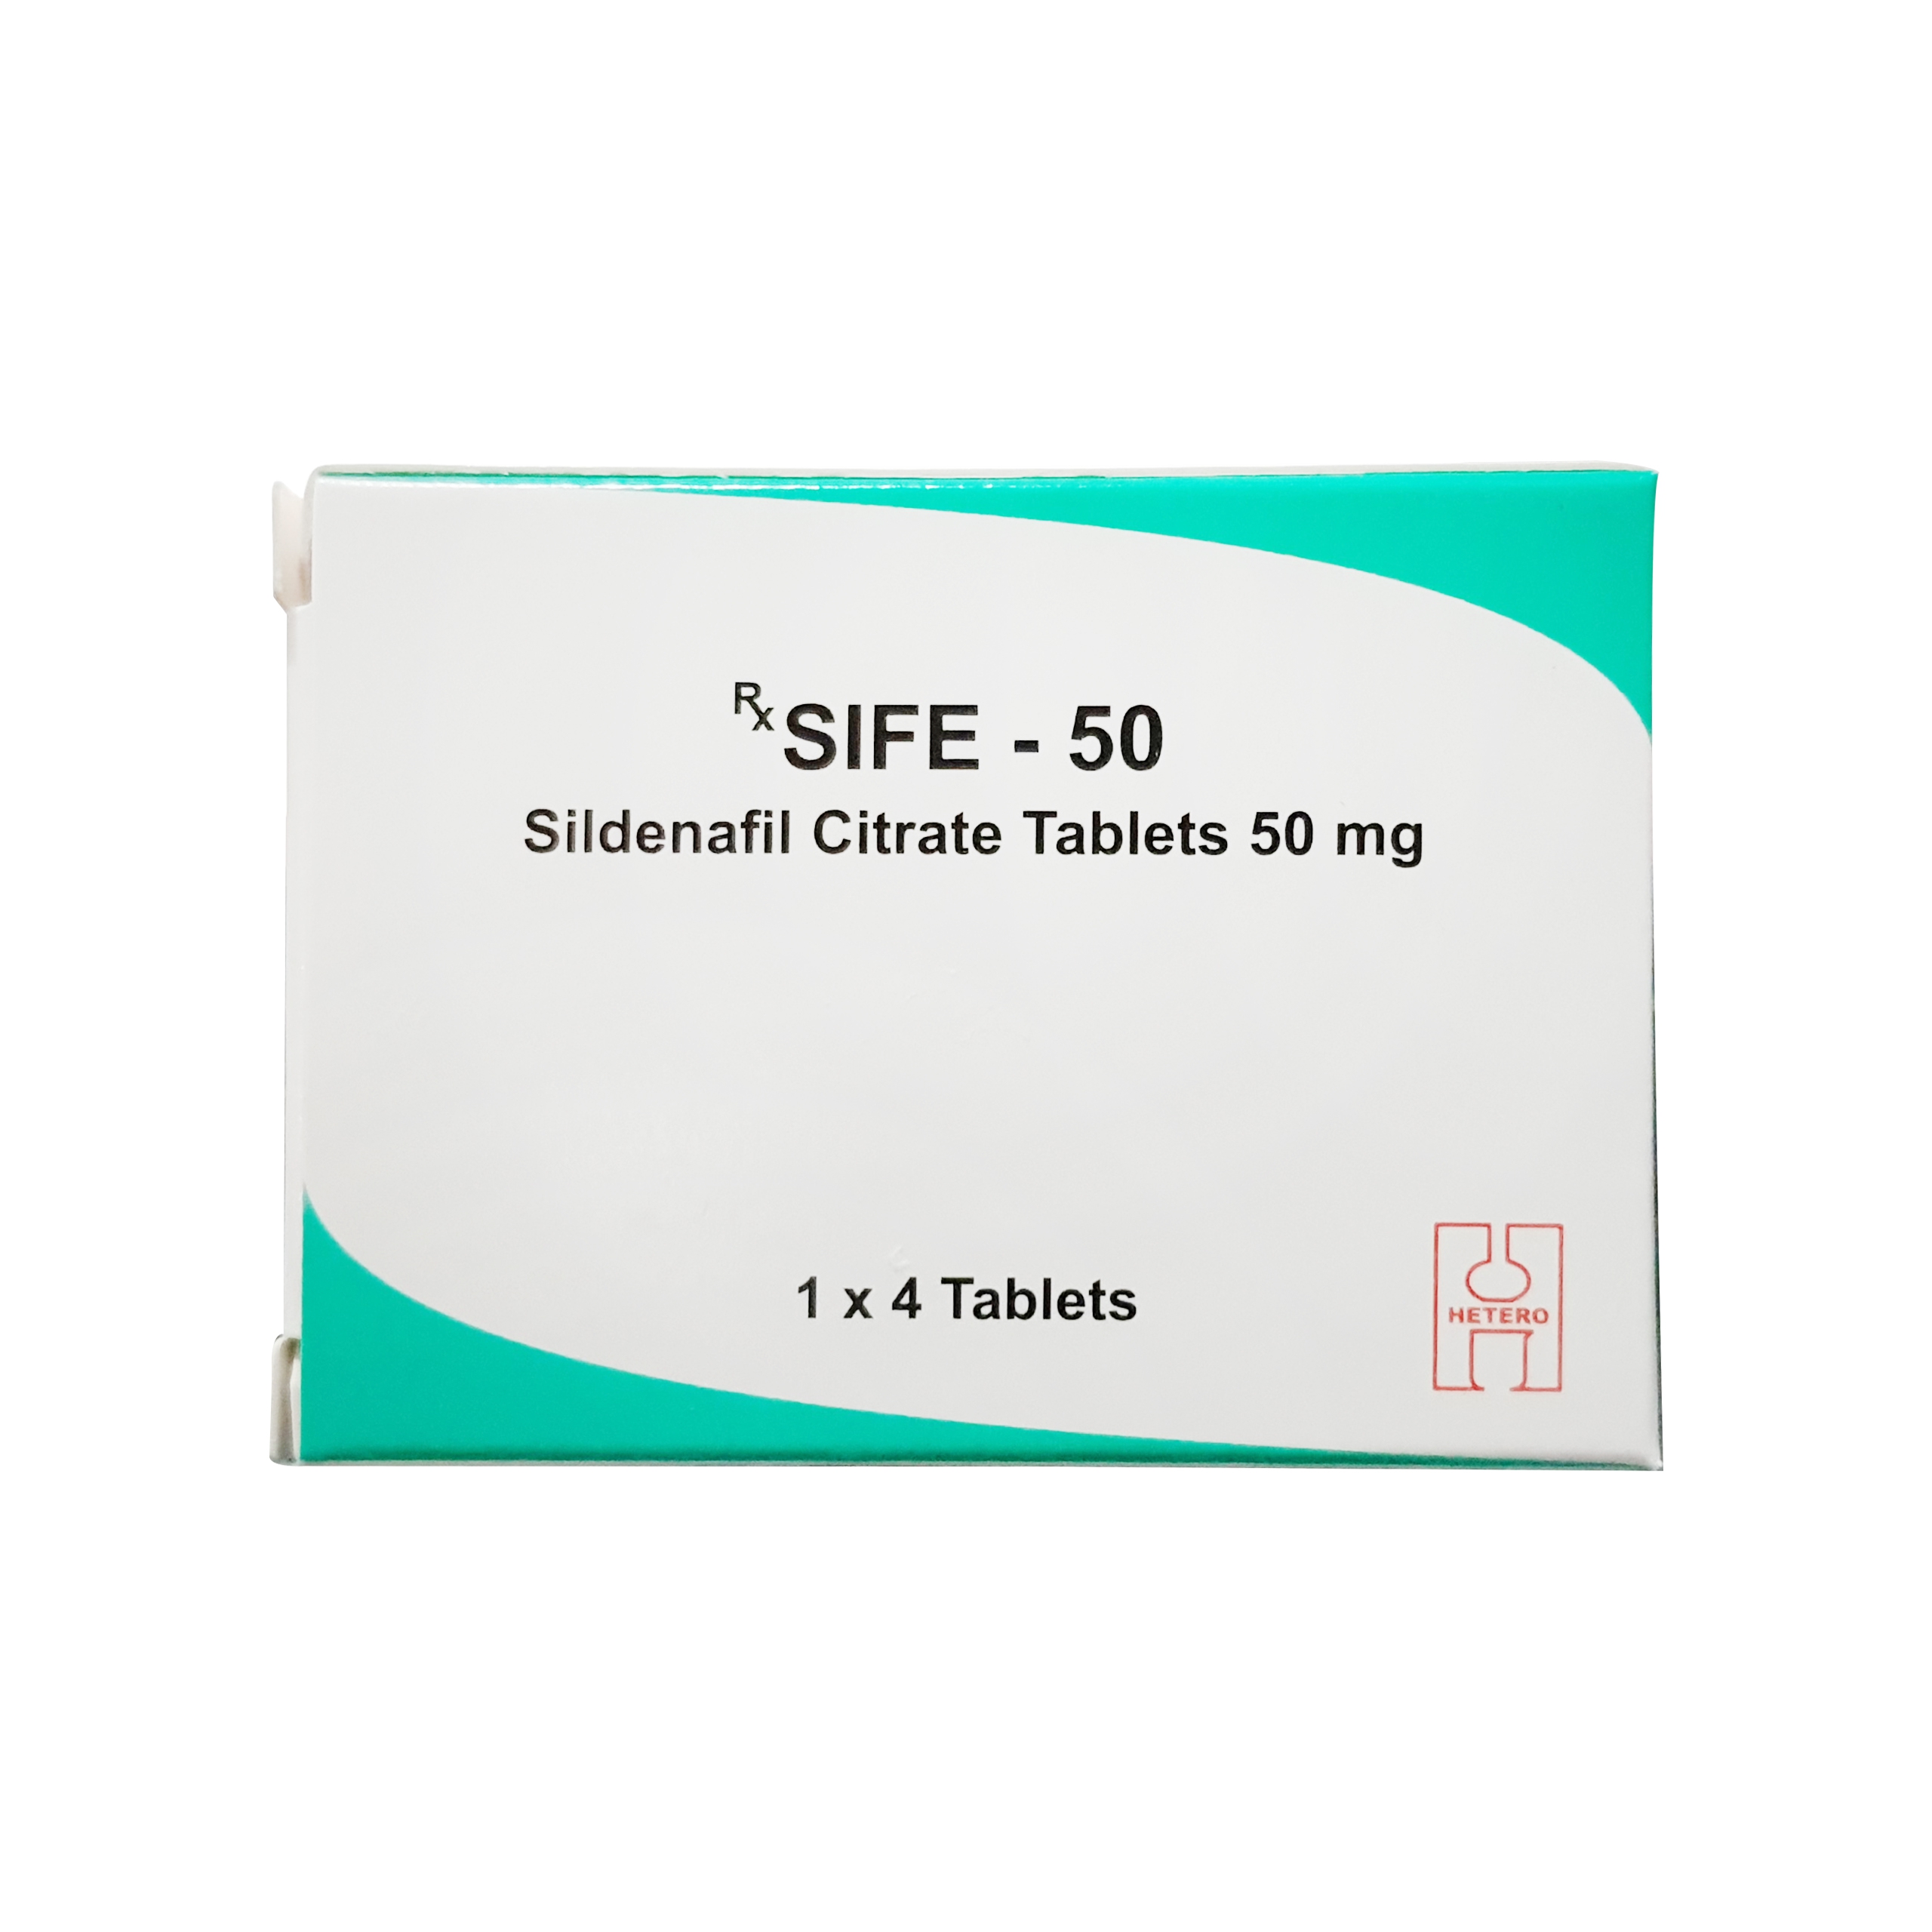 Sife 50 - Hộp 1 vỉ x 4 viên - Hetero Drugs, Hetero Labs Limited - Hỗ trợ